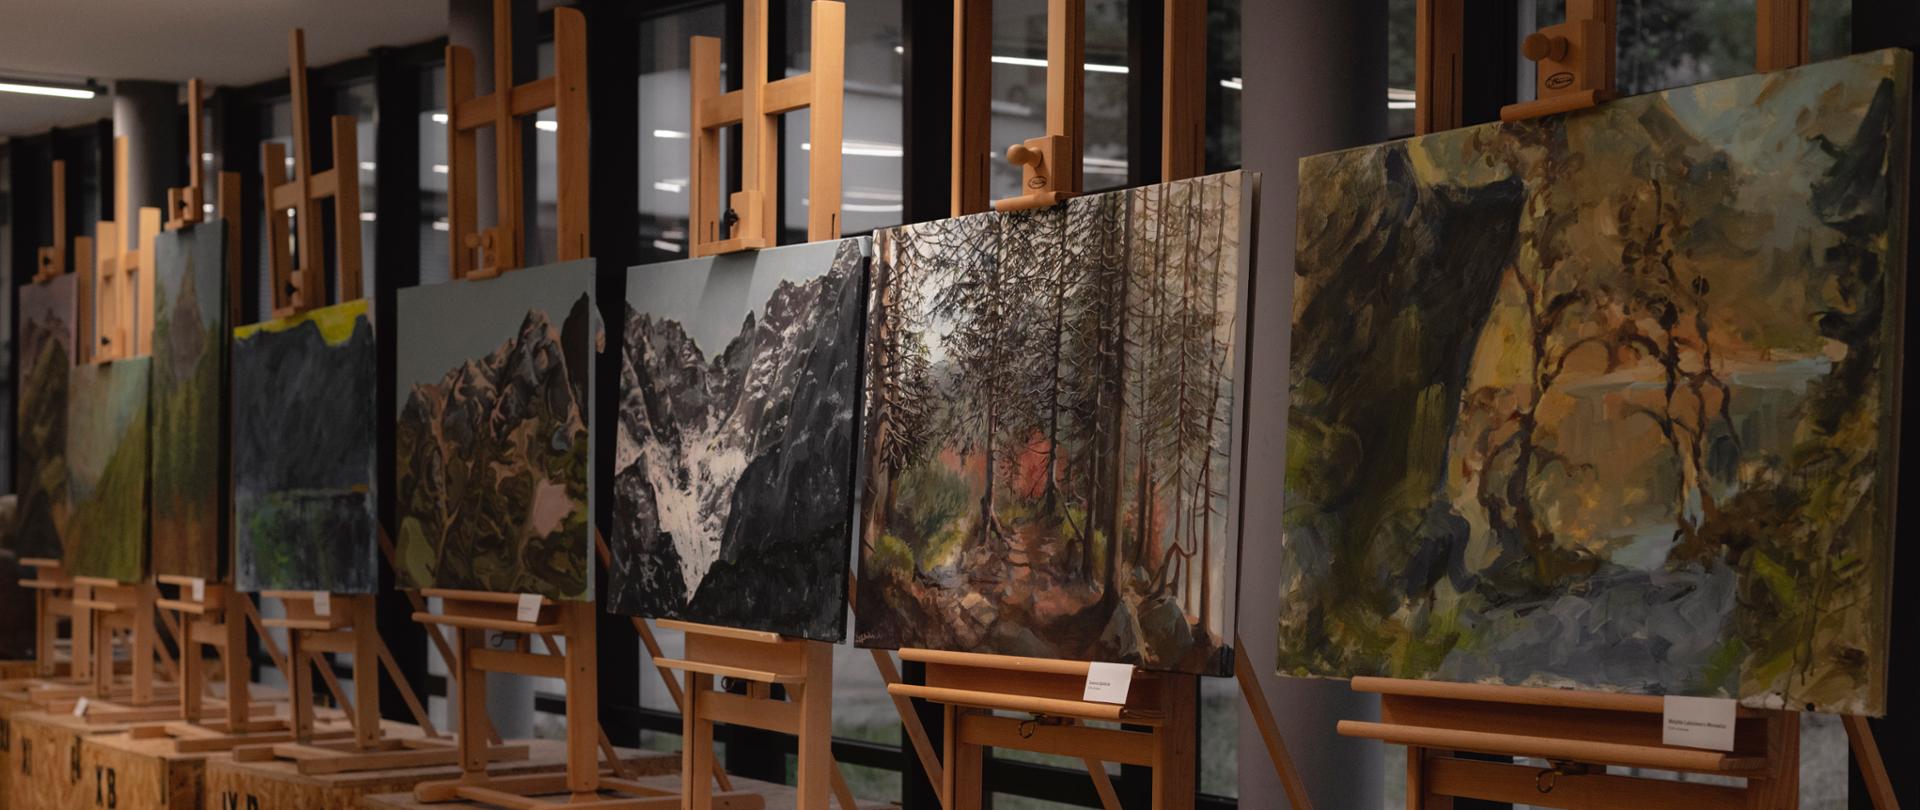 Na zdjęciu prace malarskie - pejzaż górski w Morskim Oku. Obrazy eksponowane są na drewnianych sztalugach.